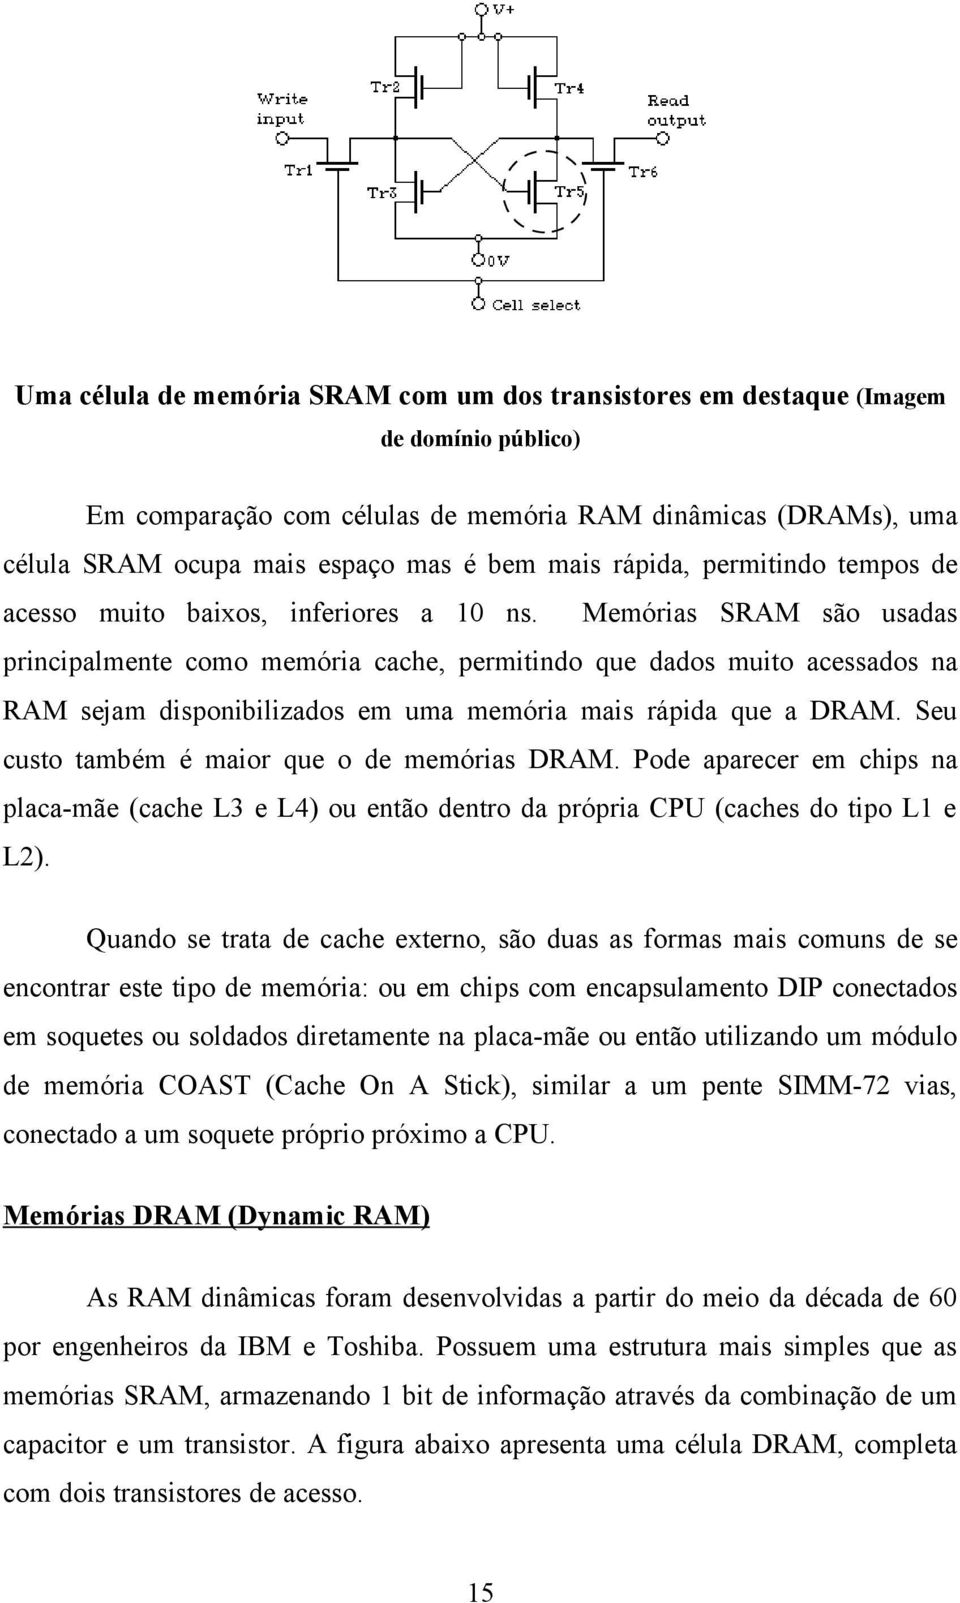 Memórias SRAM são usadas principalmente como memória cache, permitindo que dados muito acessados na RAM sejam disponibilizados em uma memória mais rápida que a DRAM.